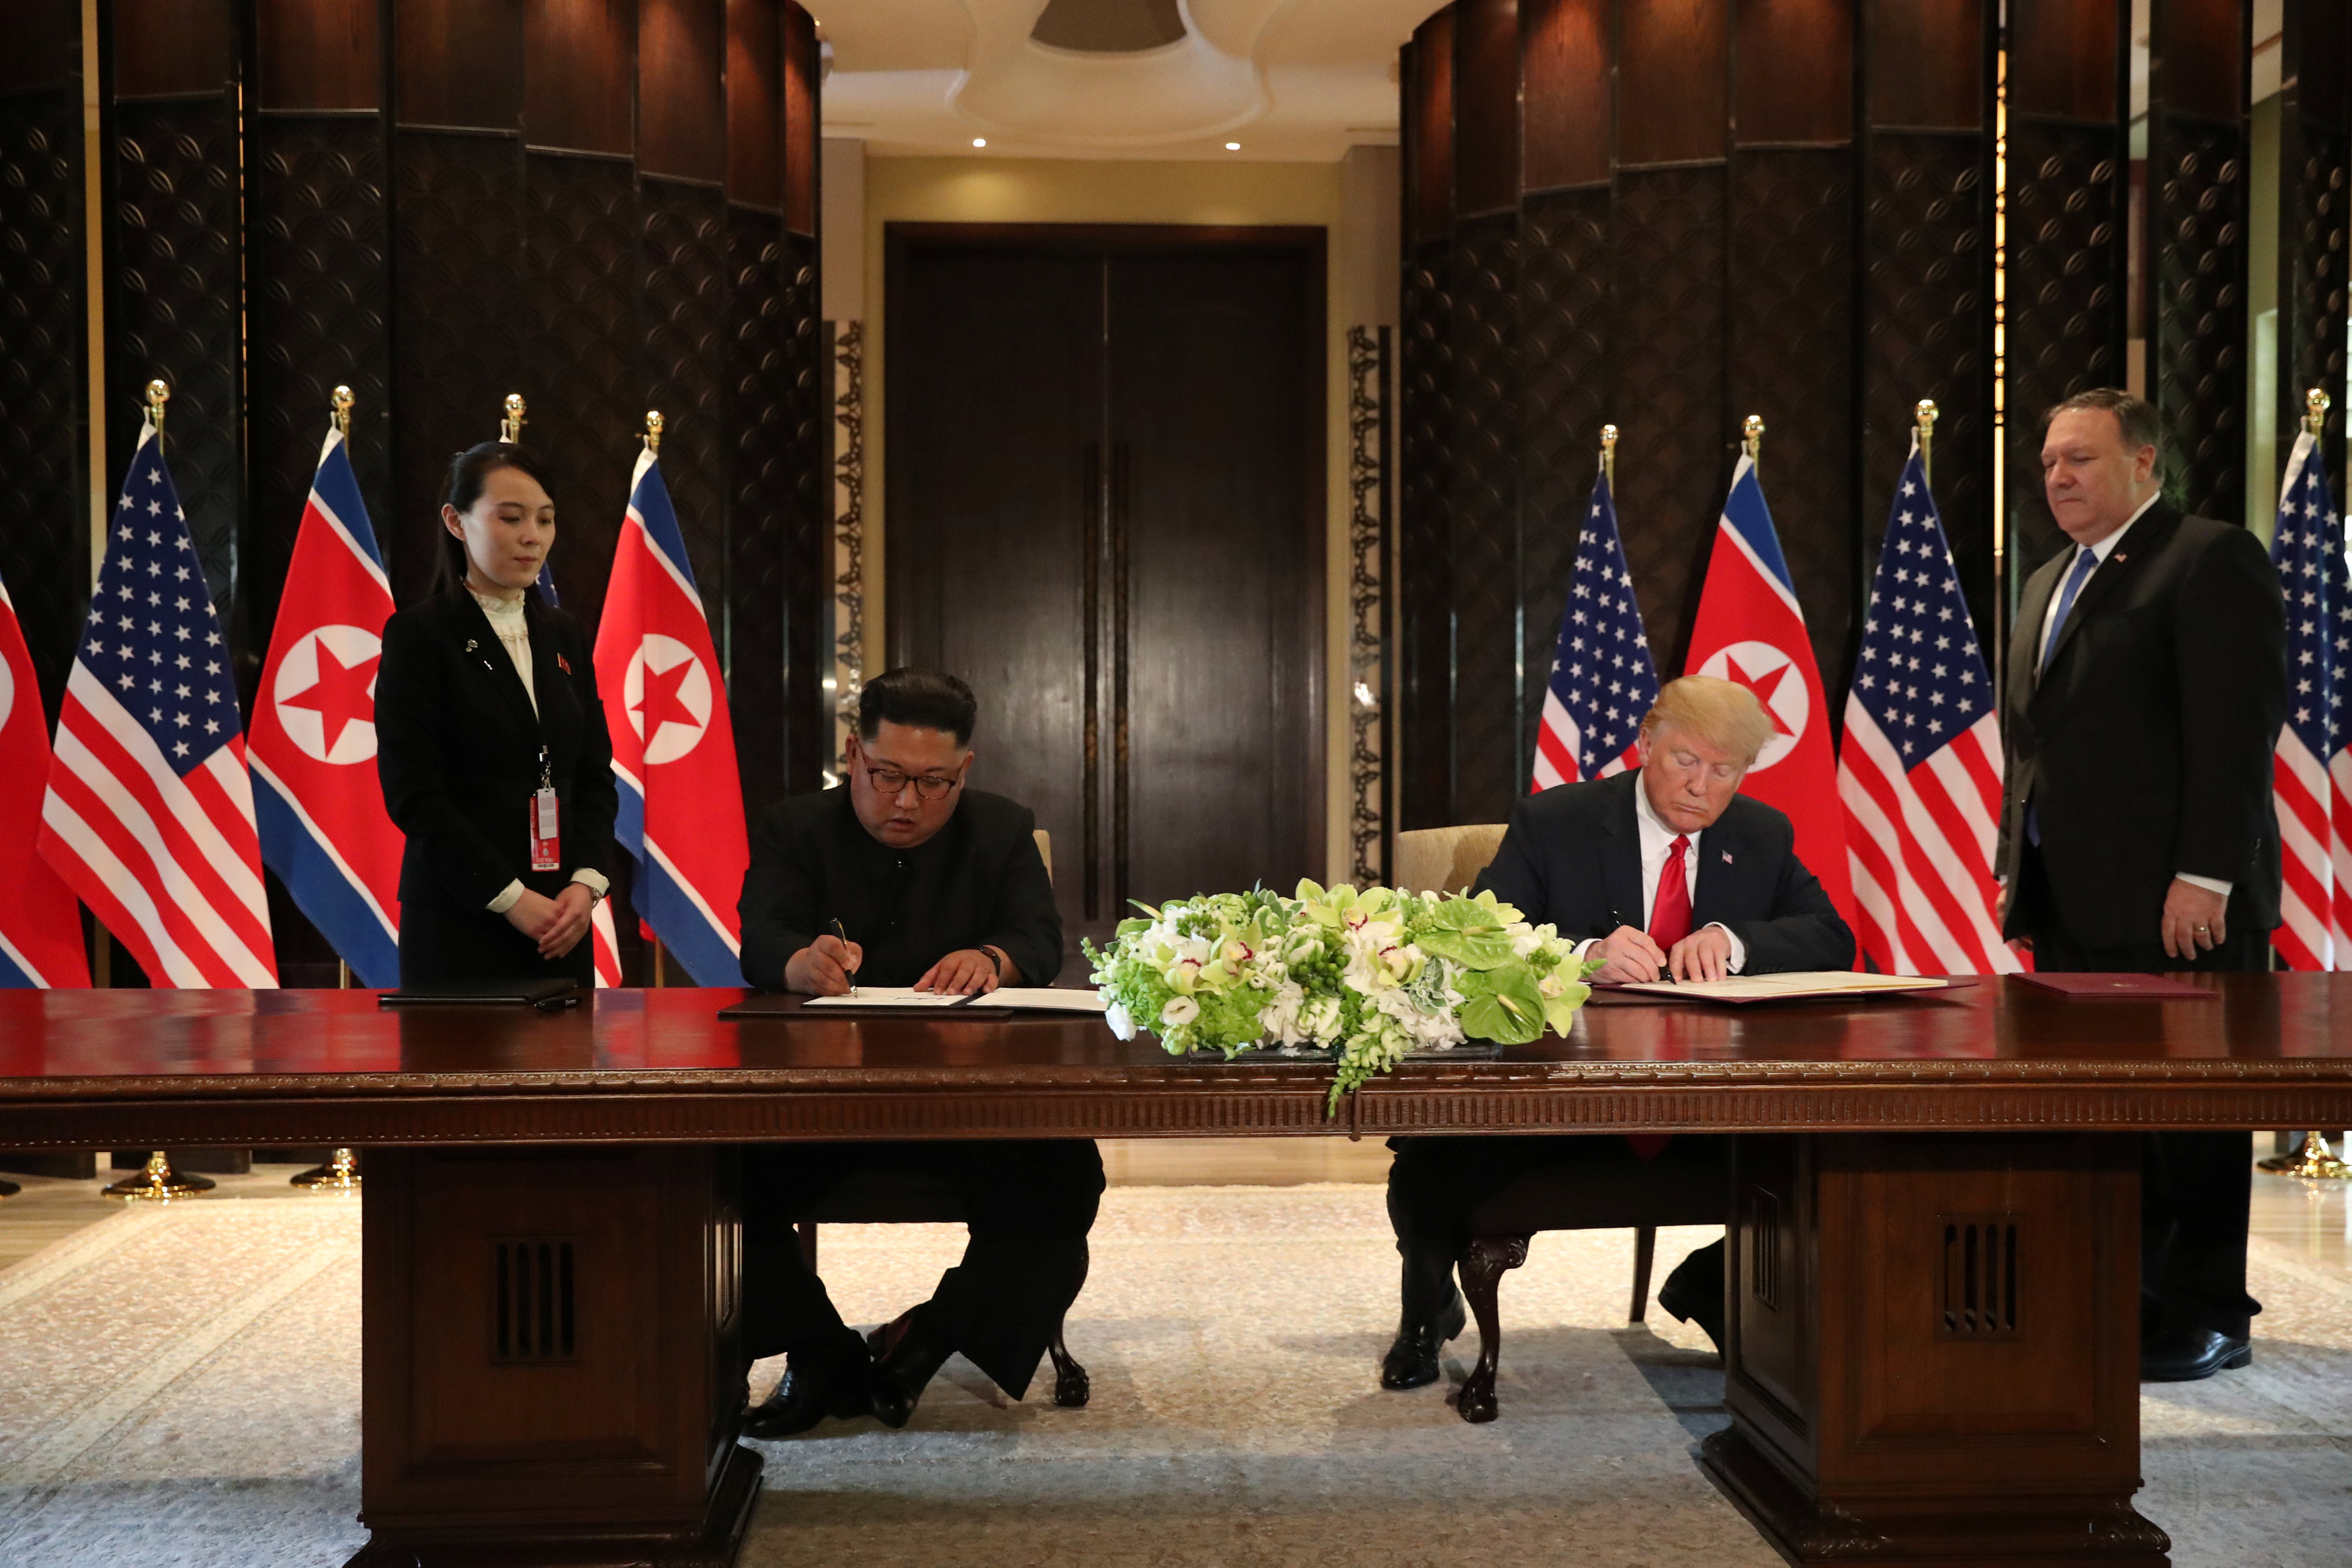 Τέλος εποχής – Ιστορική συμφωνία ΗΠΑ-Βόρειας Κορέας – Τι αναφέρει το κοινό ανακοινωθέν που υπέγραψαν οι Κιμ και Τραμπ